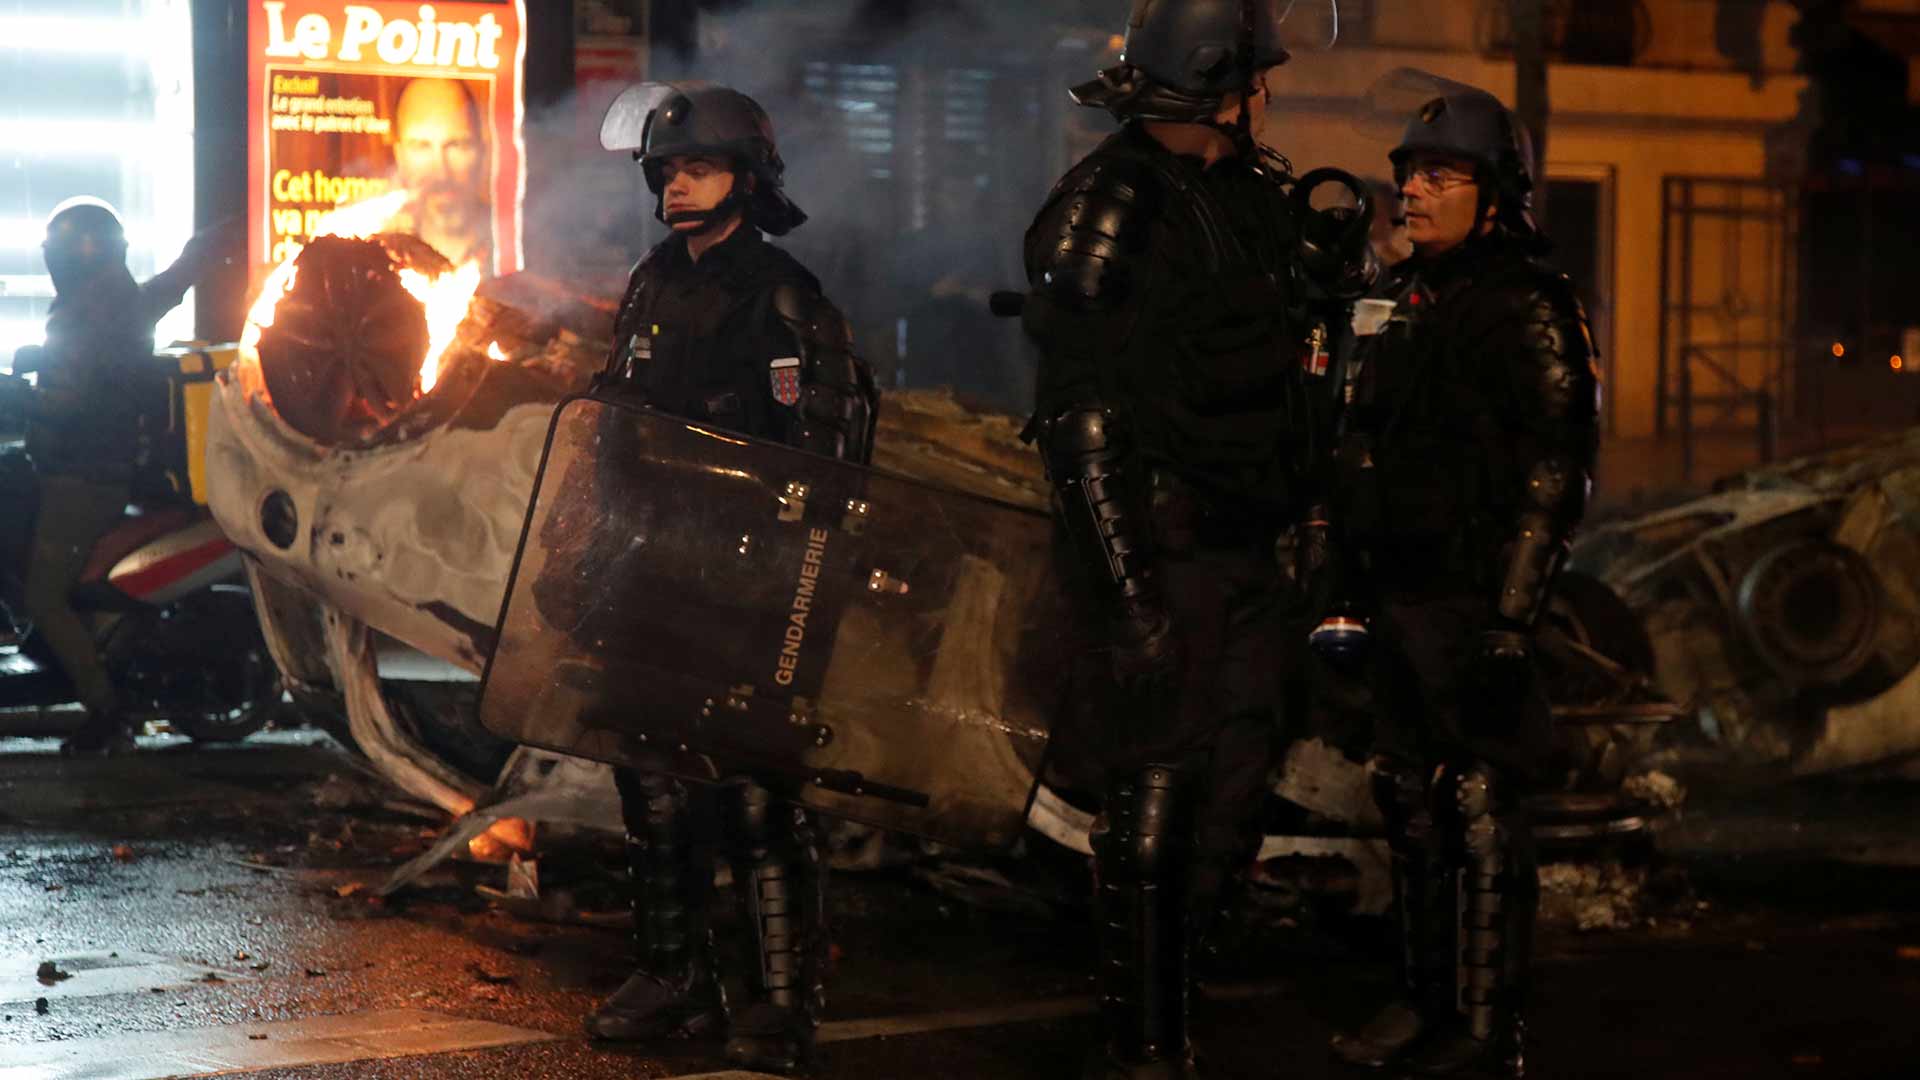 El primer ministro francés se reunirá con los ‘chalecos amarillos’ tras los peores disturbios en más de una década